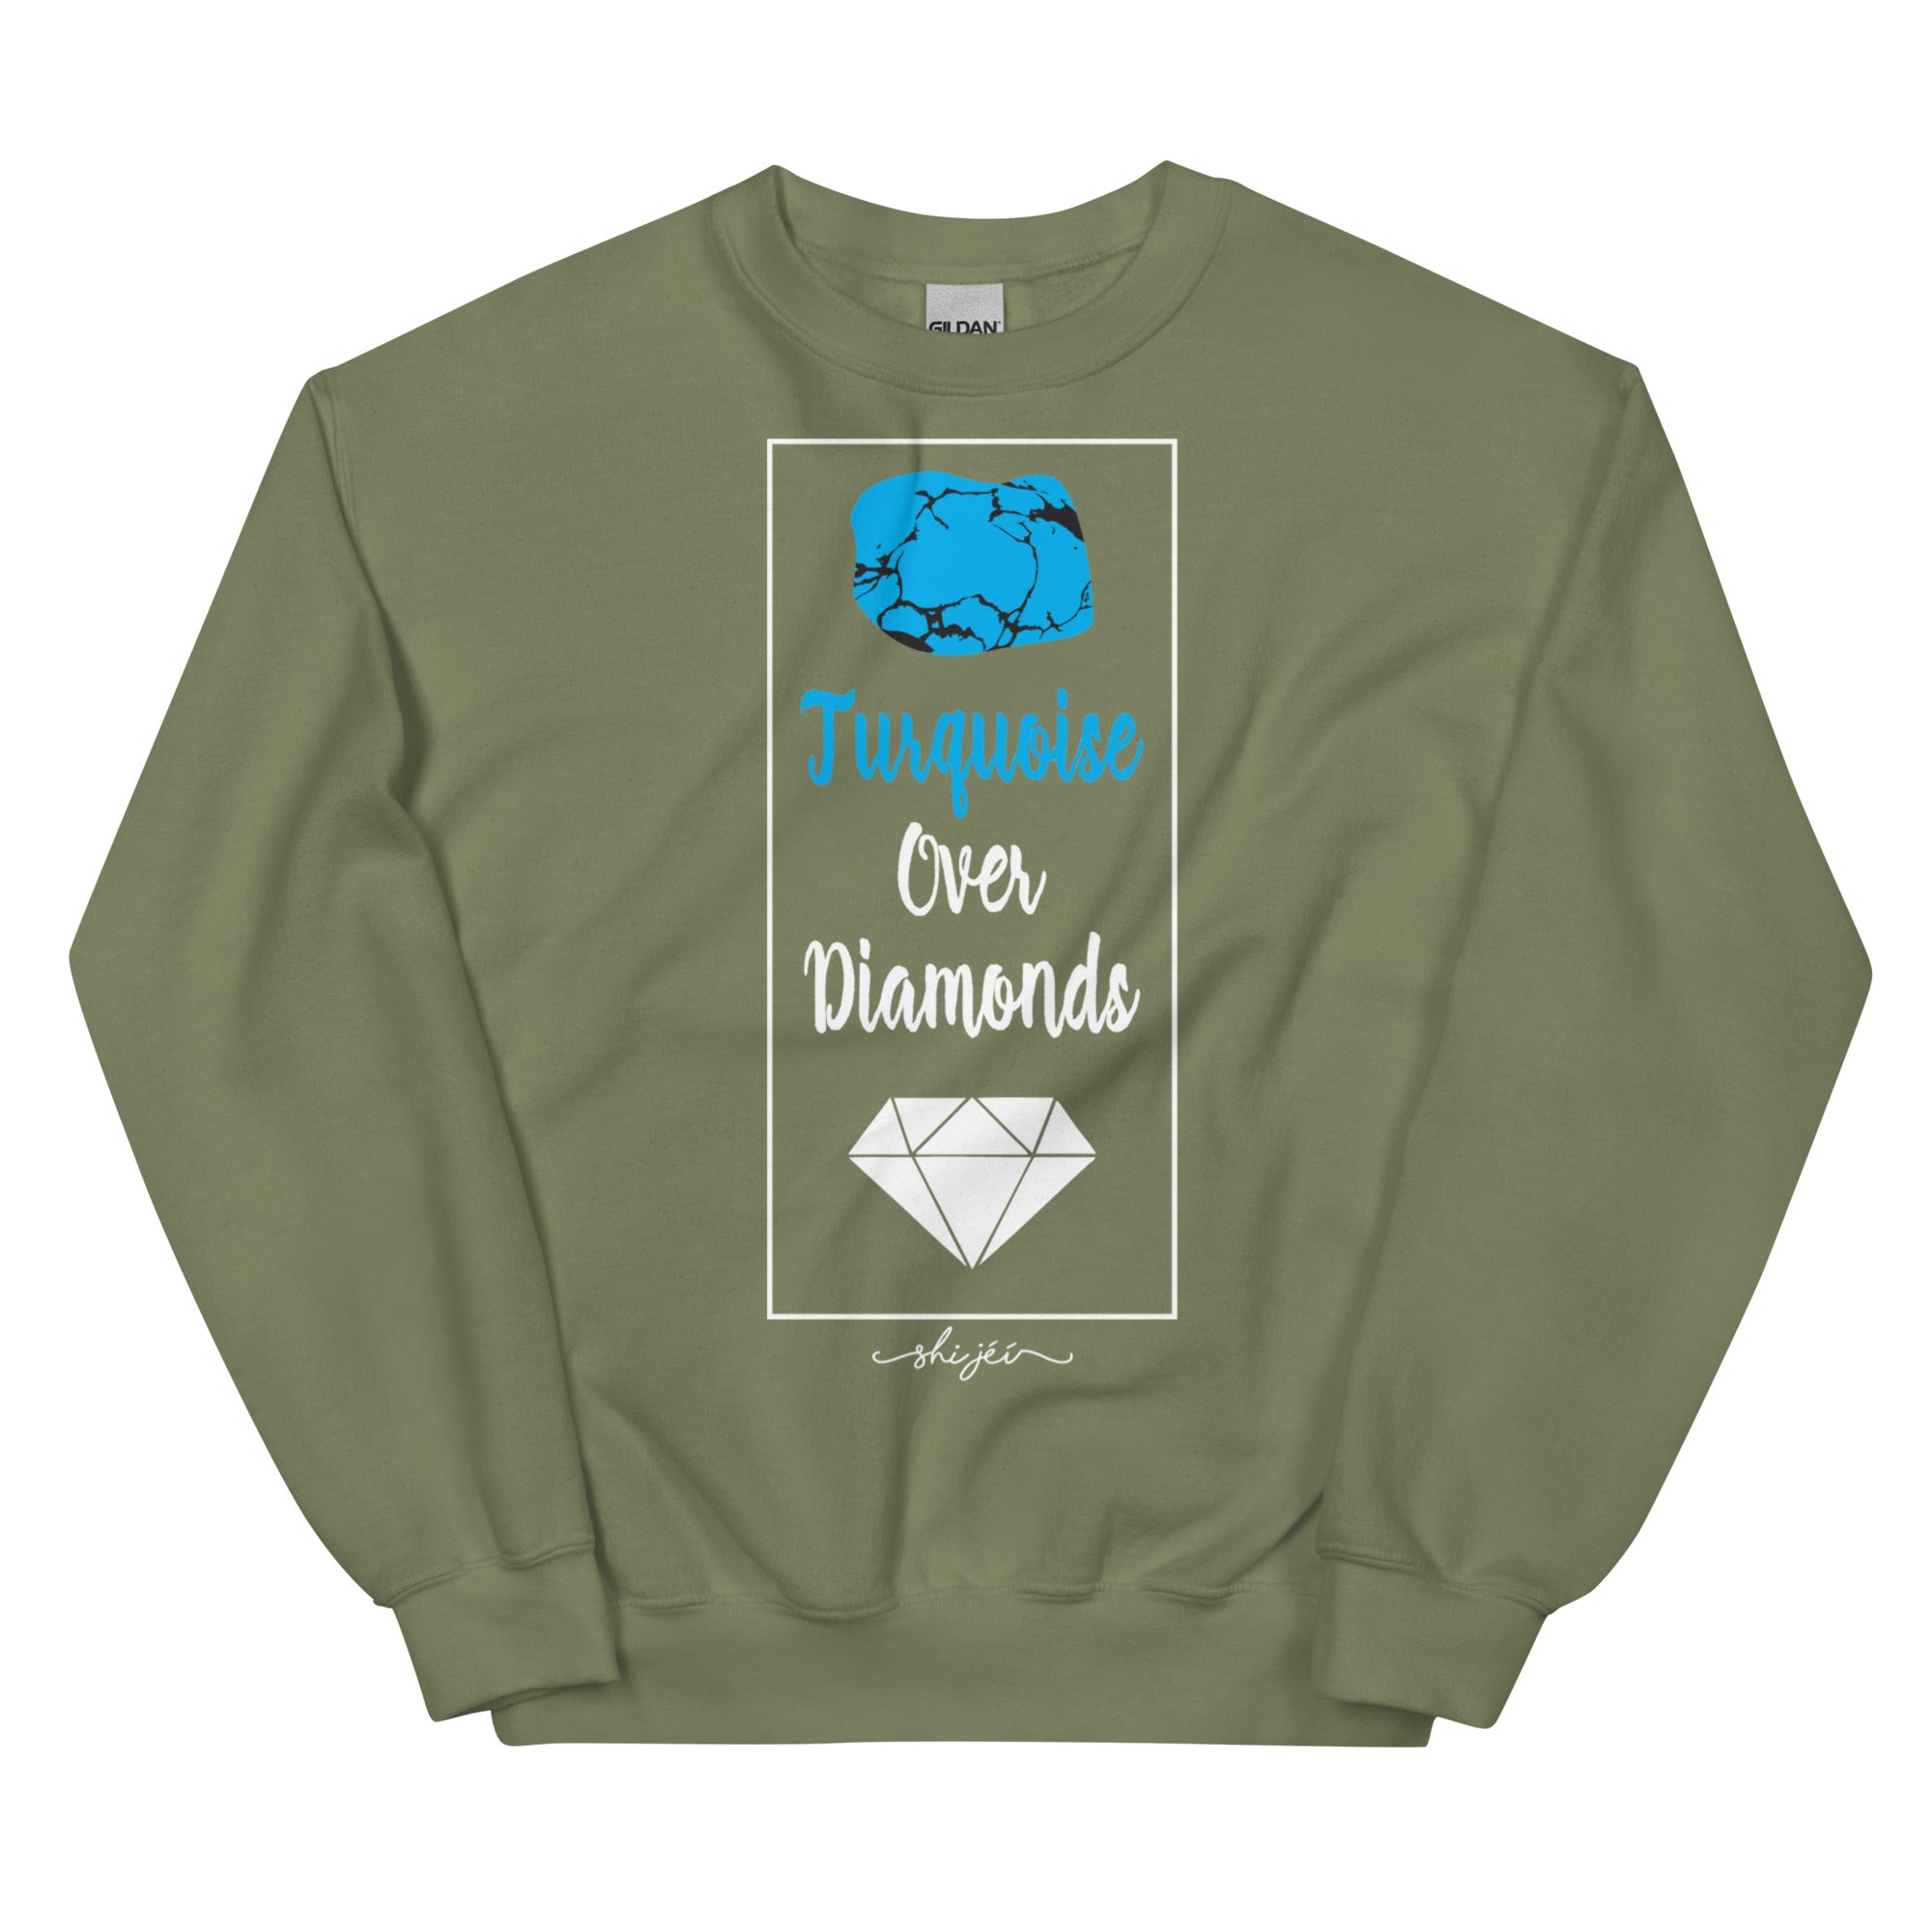 Turquoise Over Diamonds Sweatshirt